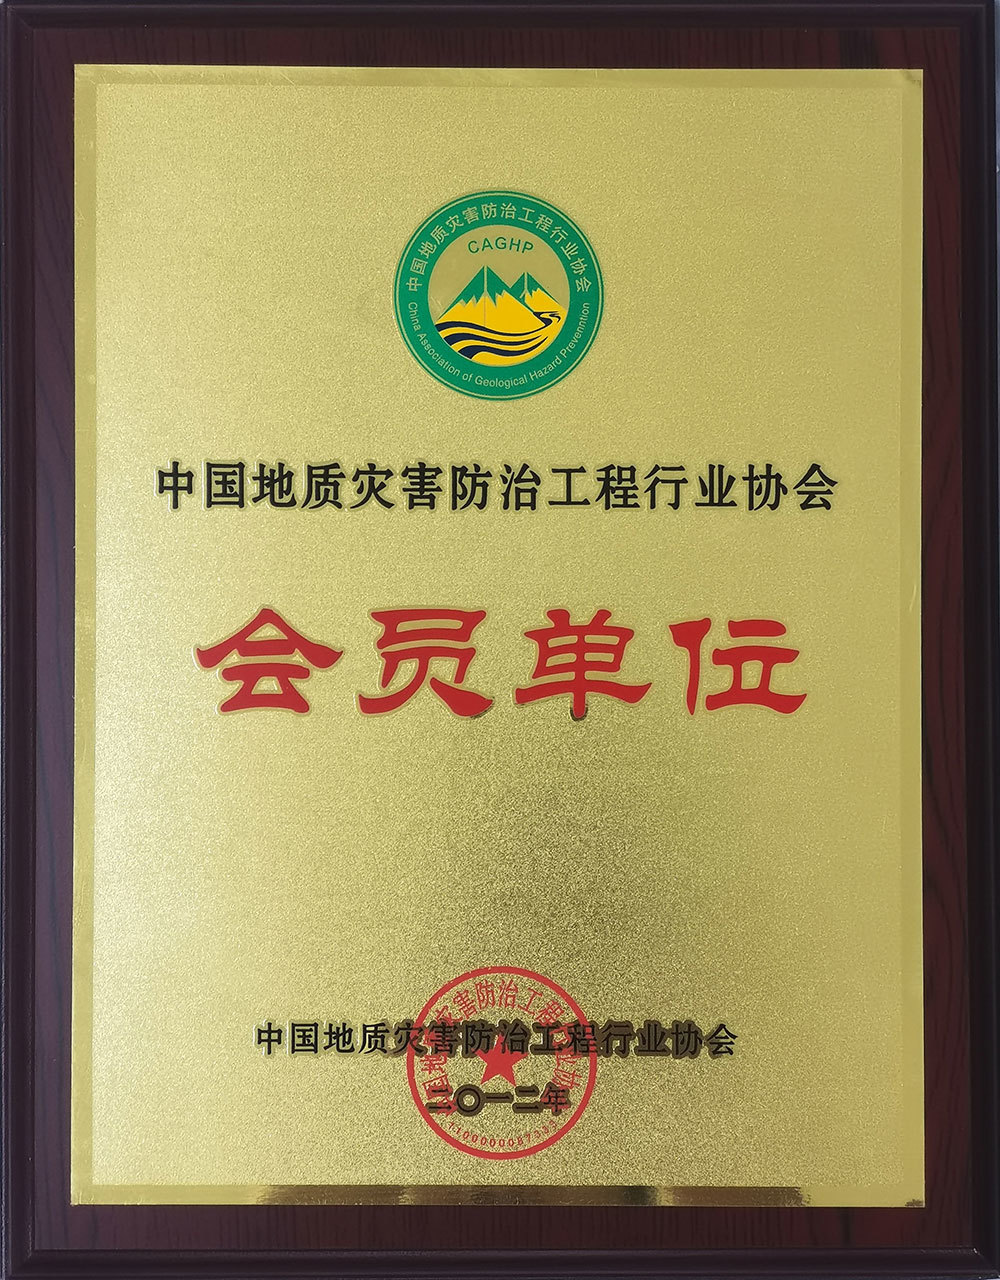 中国地质灾害防治工程行业协会会员单位